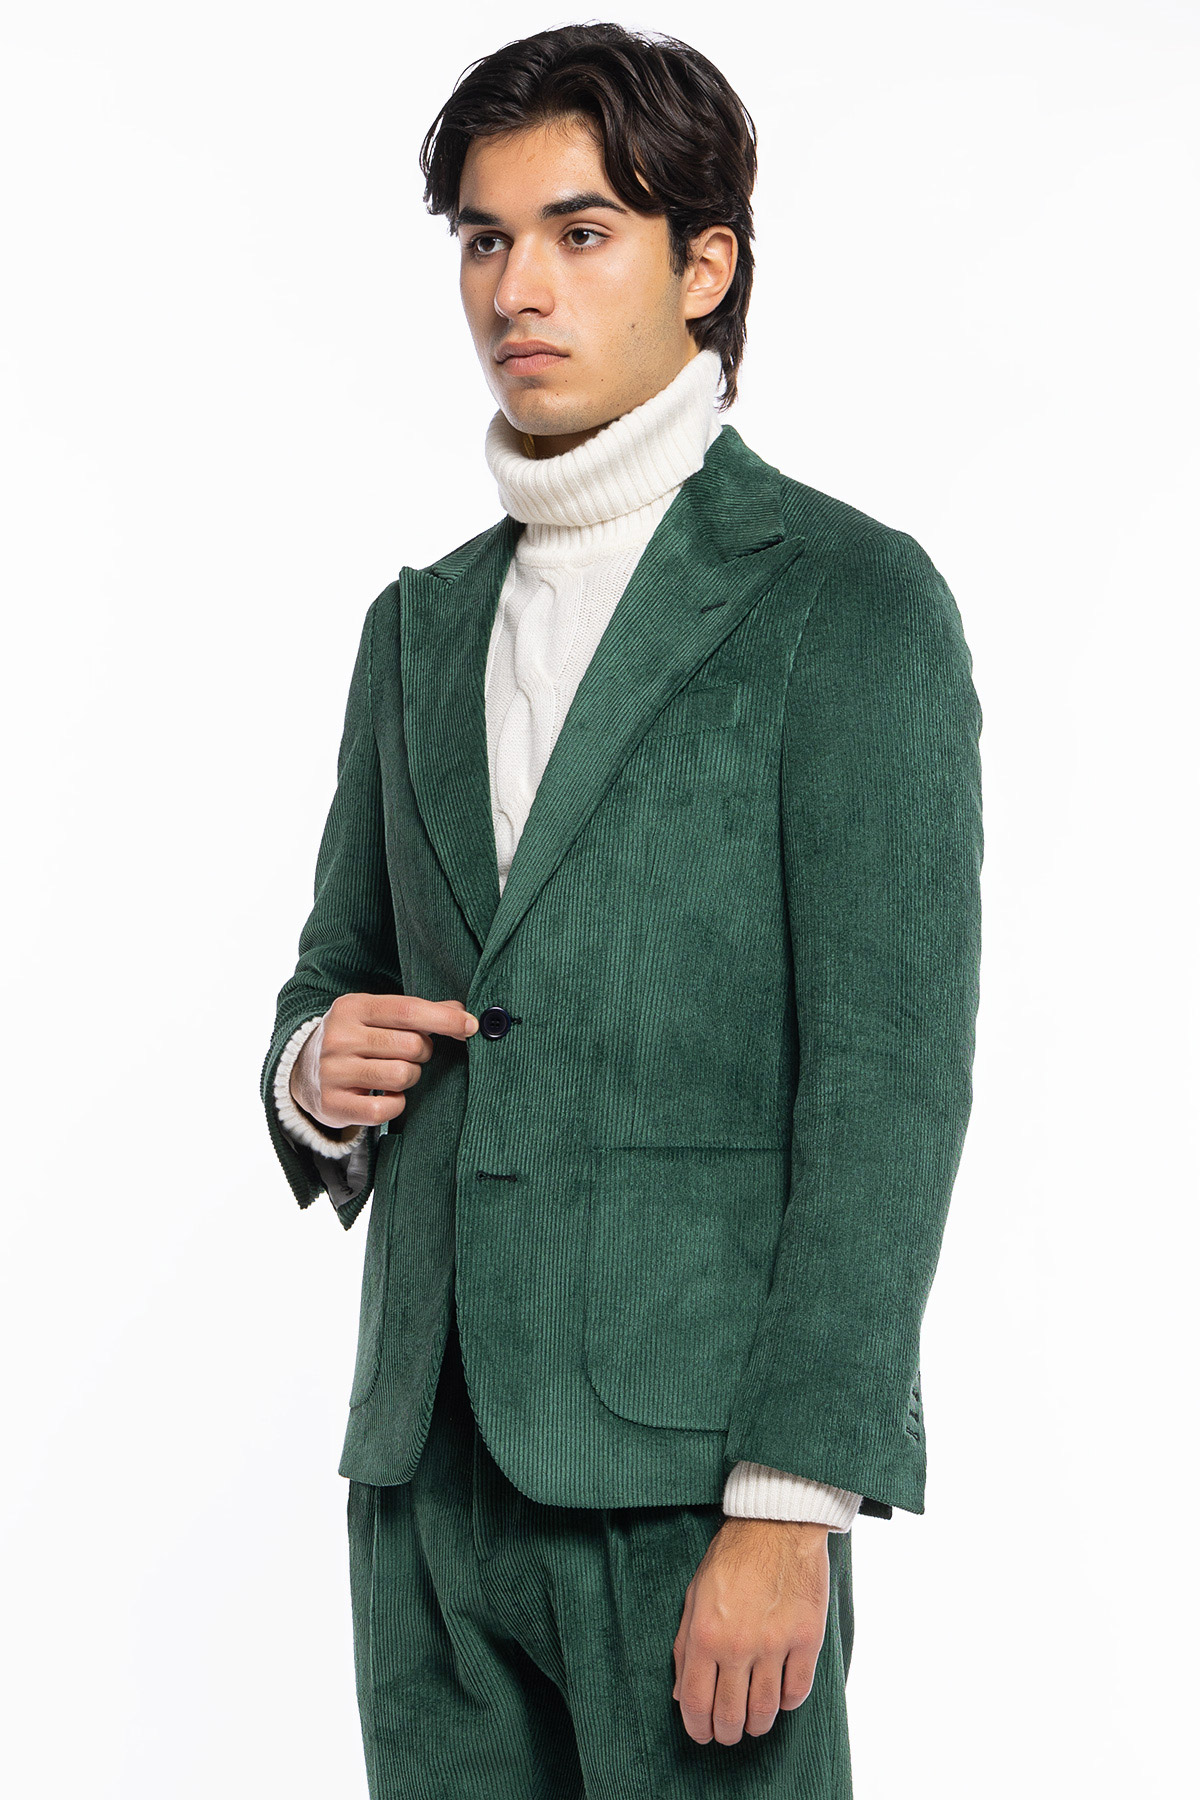 Abito uomo verde bottiglia con giacca monopetto in velluto a costine strette e pantalone vita alta cinturino biforcato